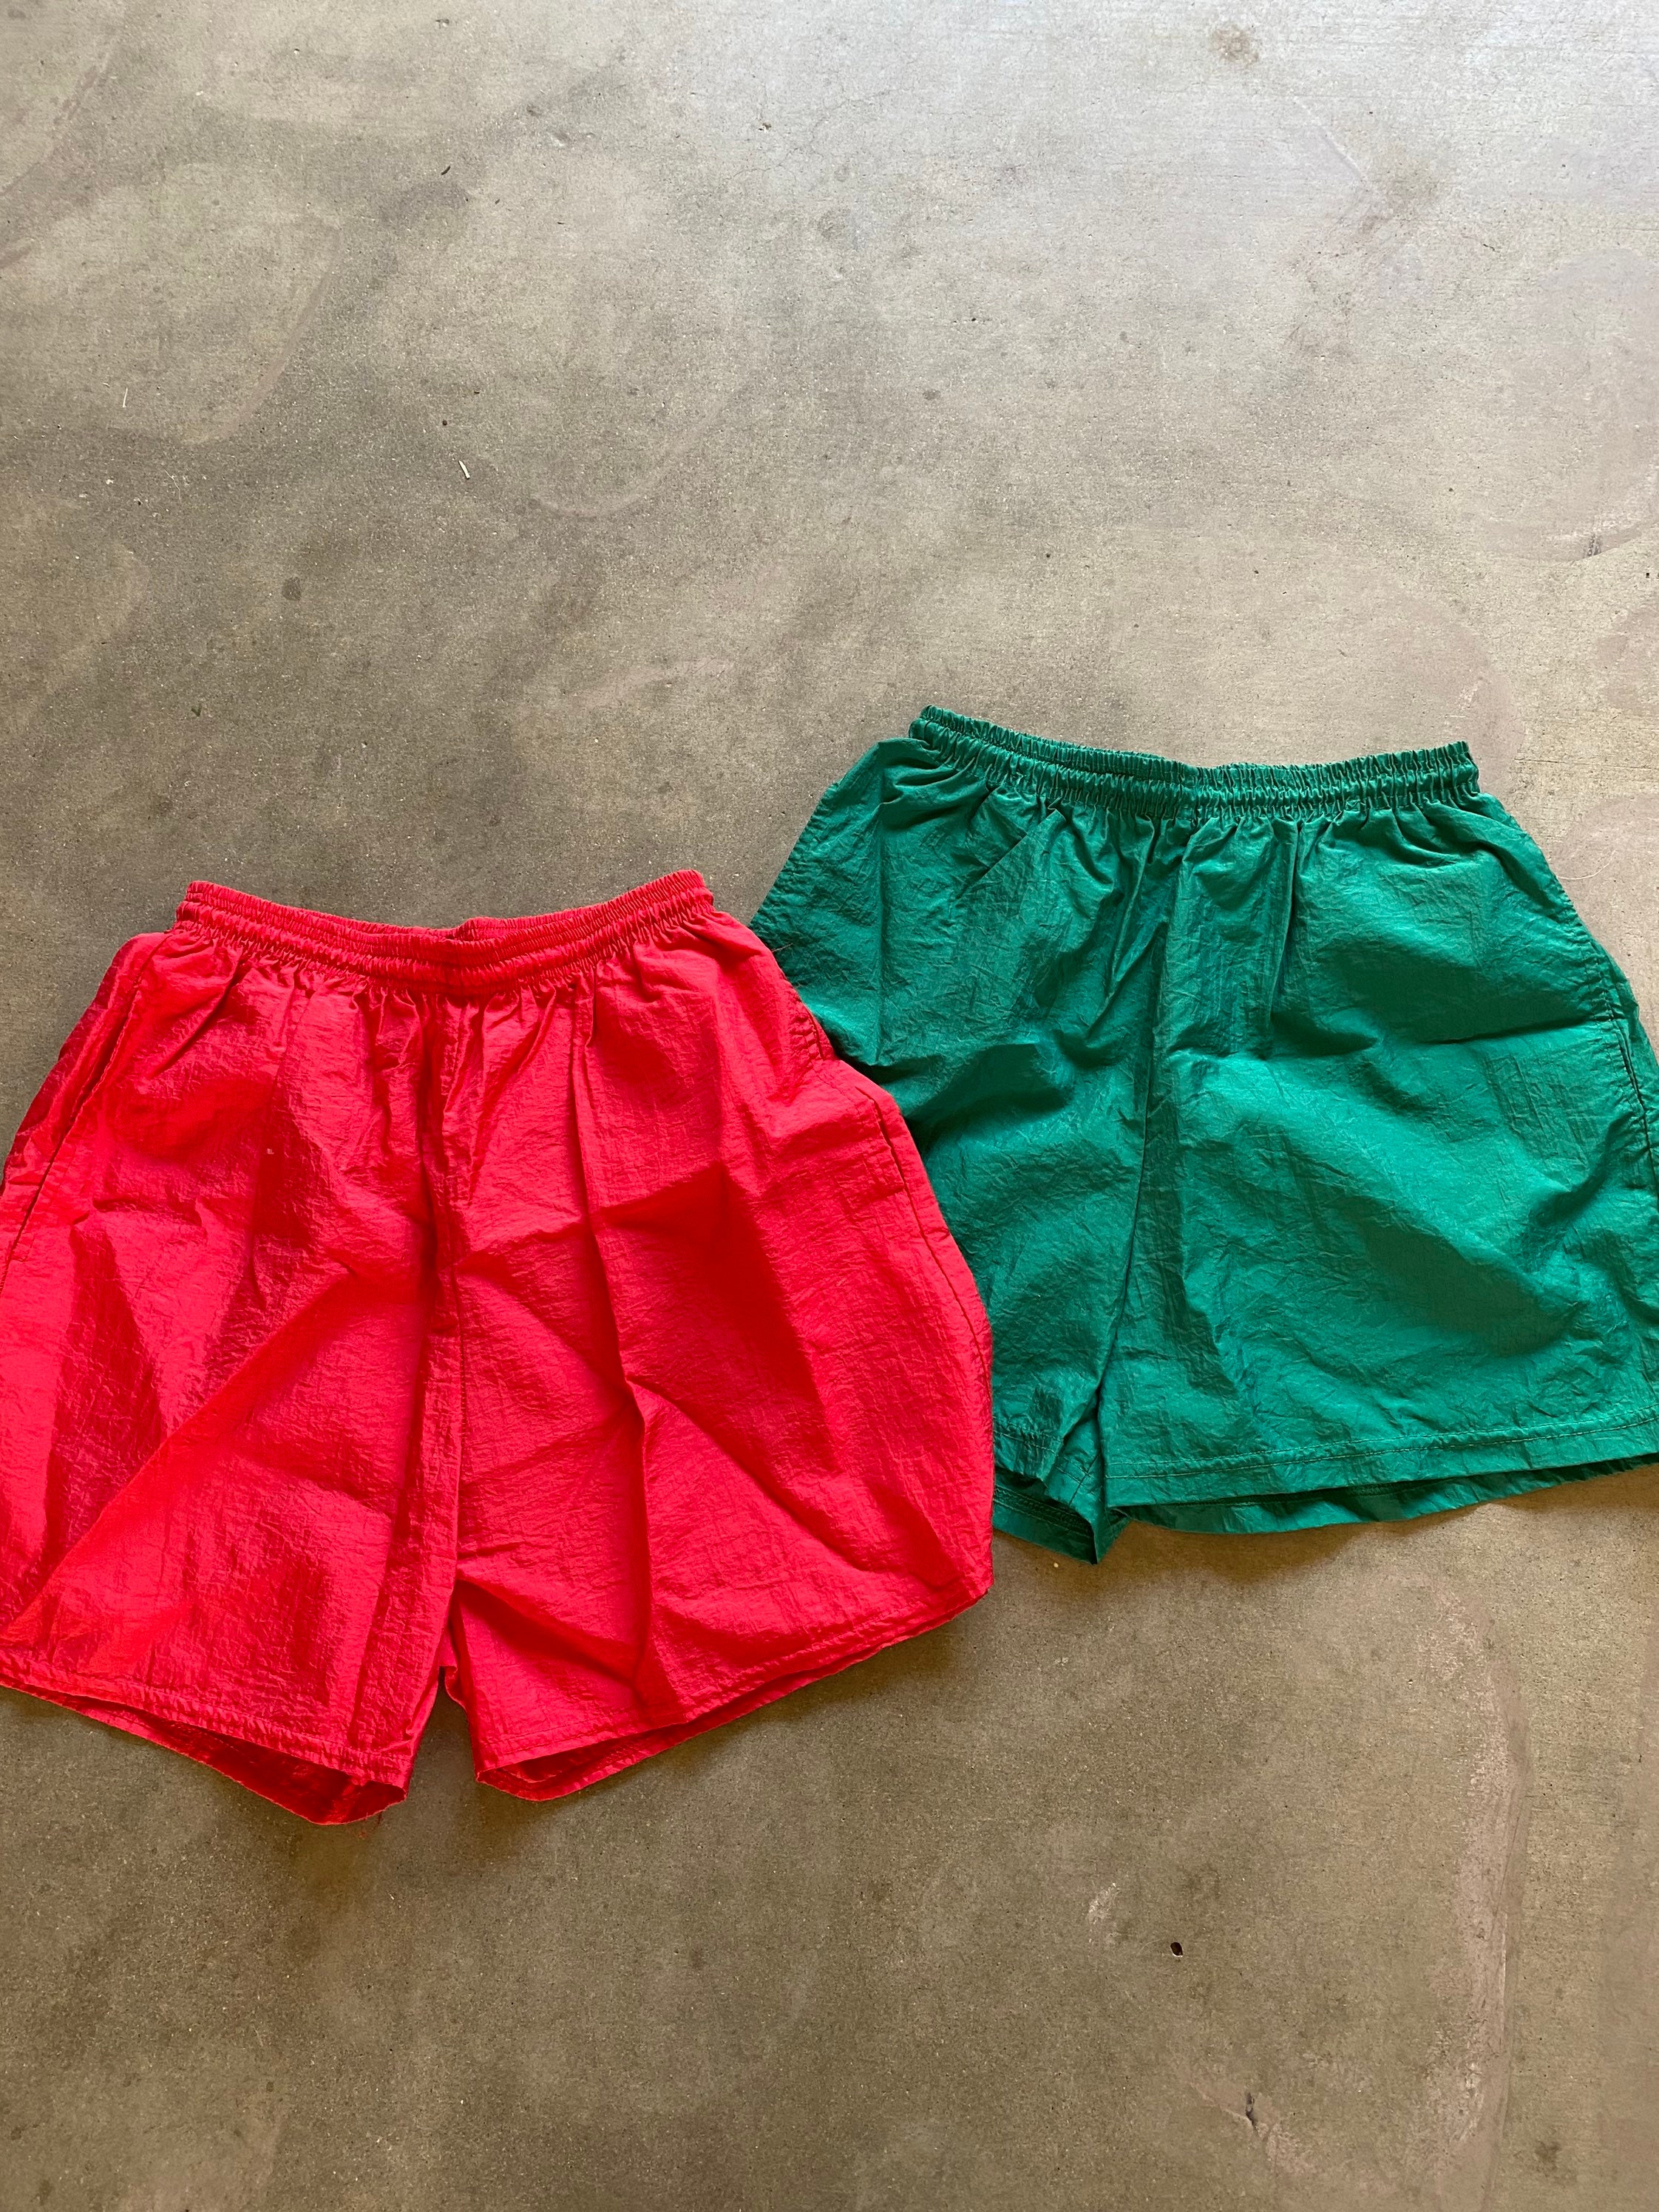 Green Nylon Shorts - Etsy